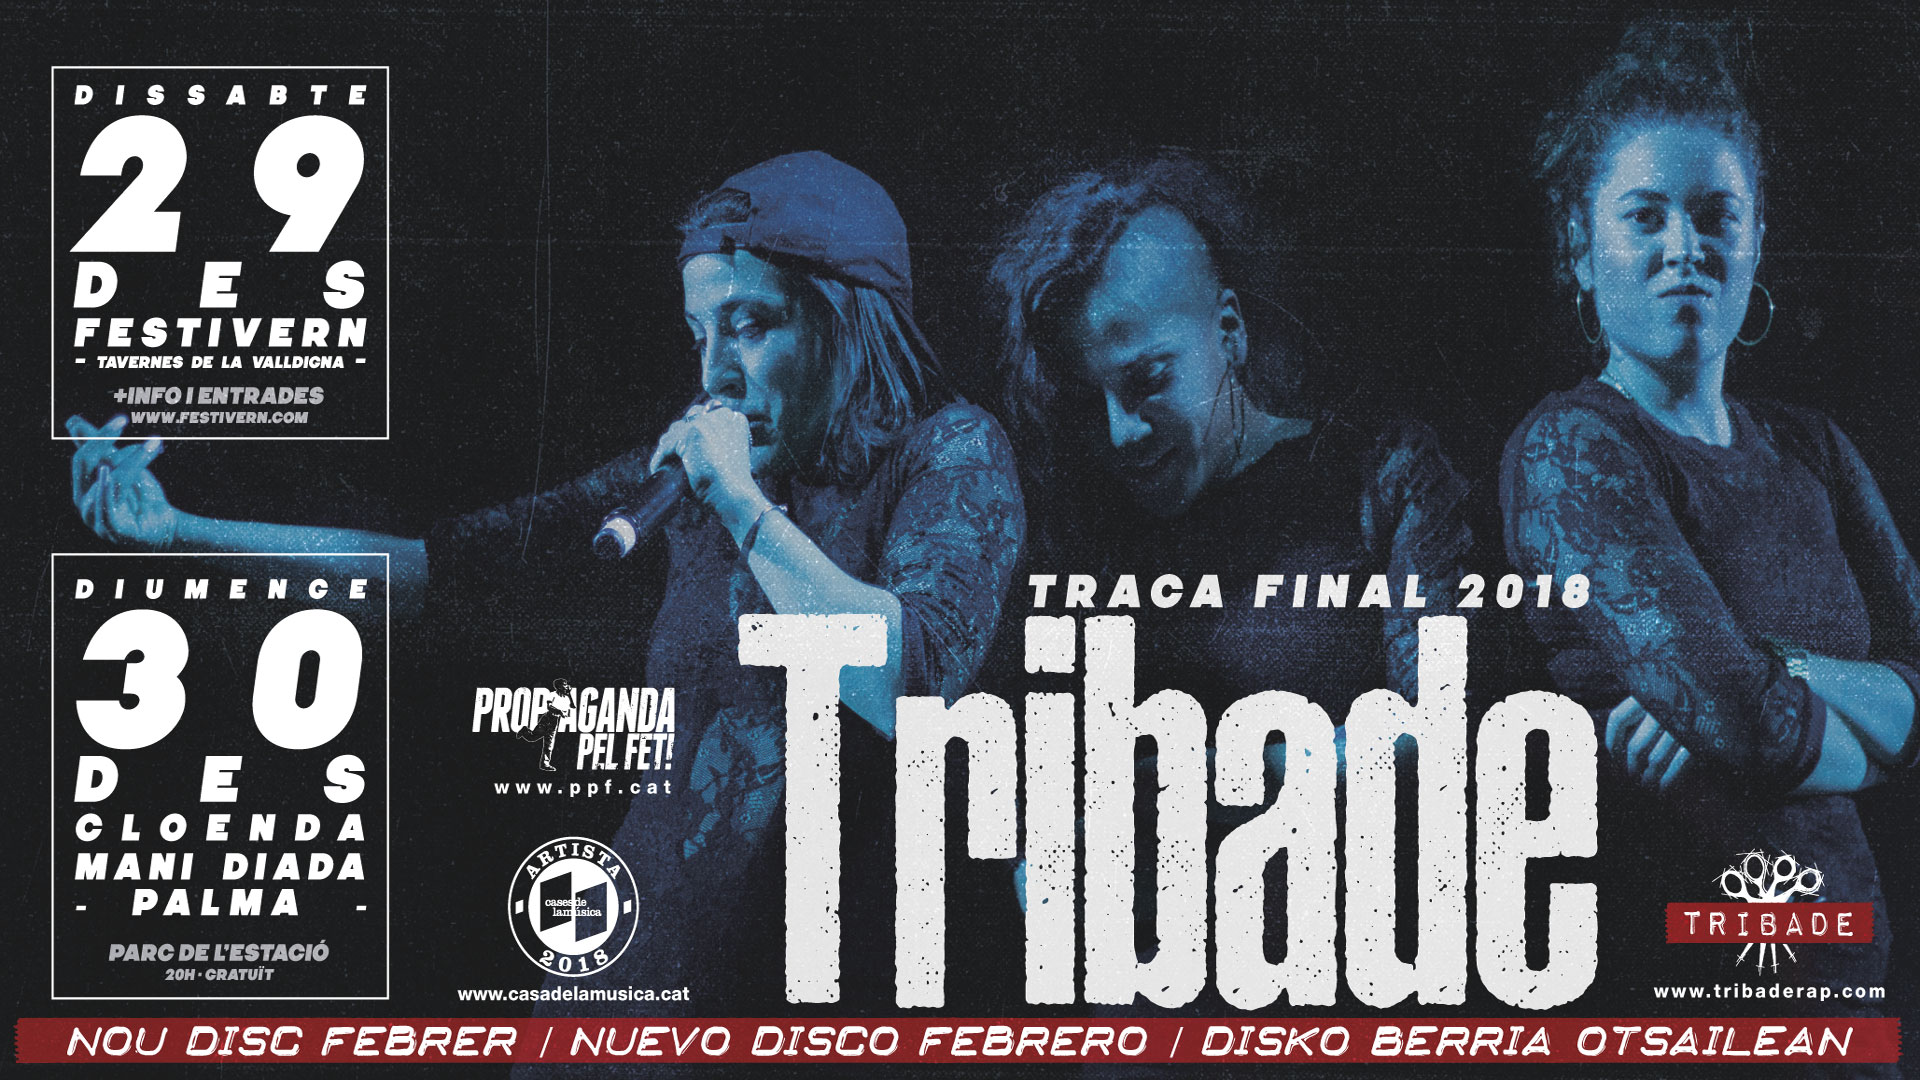 Tribade rematen el 2018 amb doblet en directe al Festivern i Mallorca!